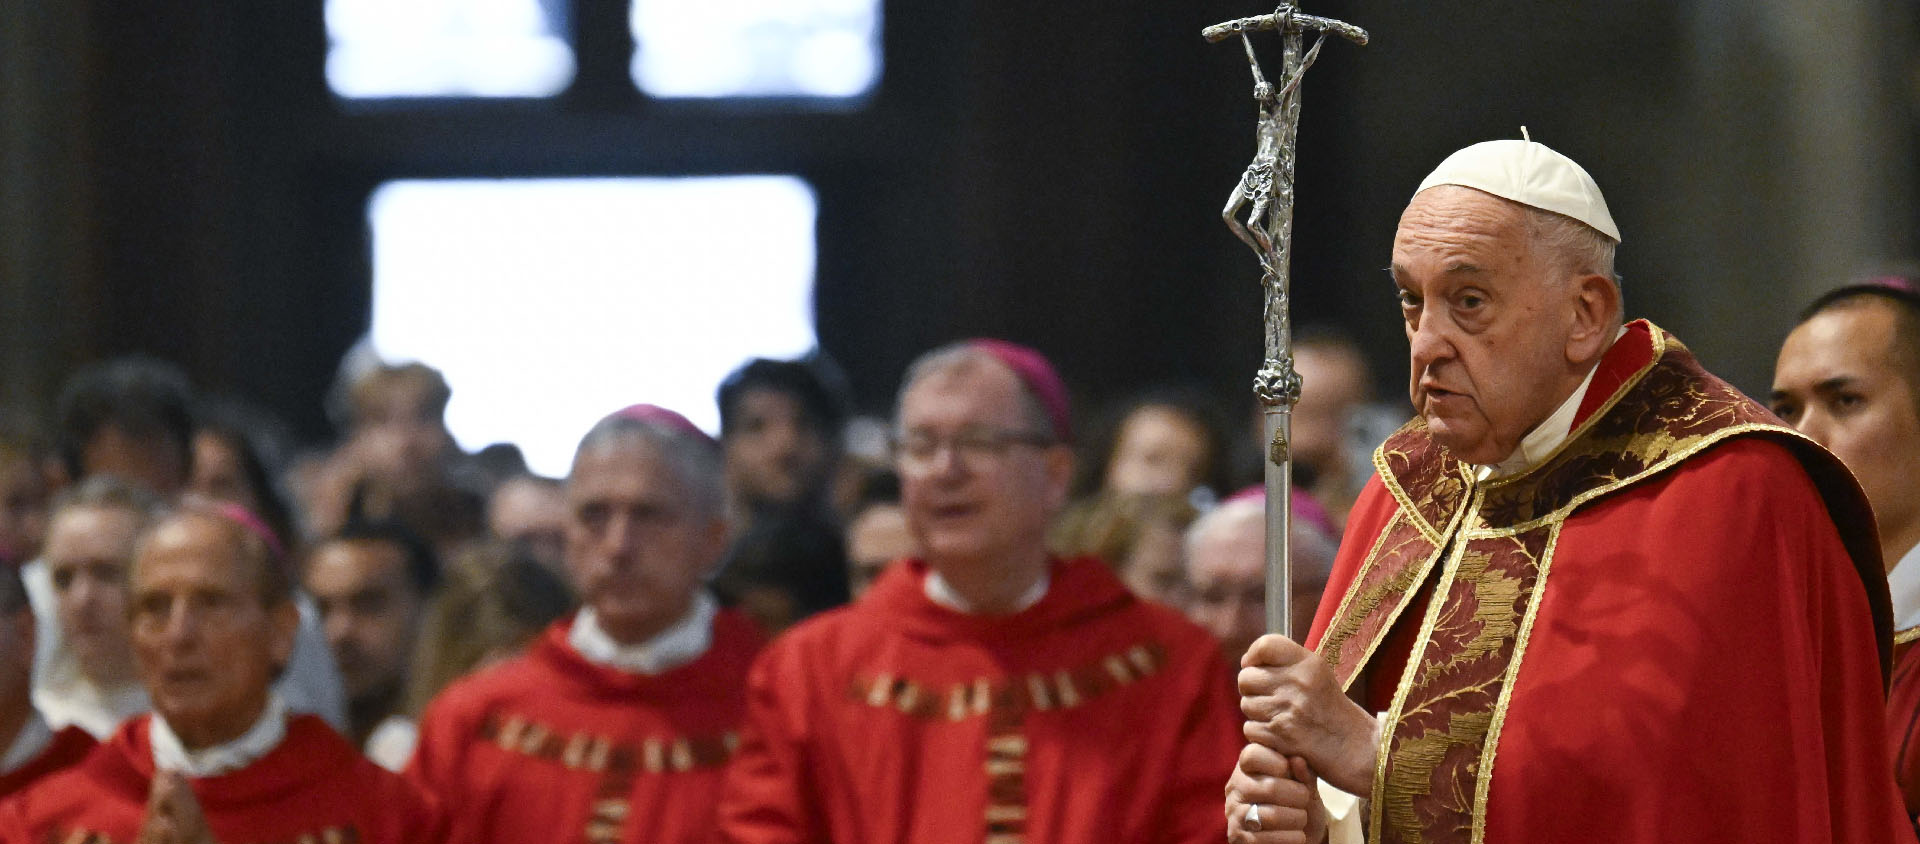 «L’Esprit Saint est fort et délicat», a insisté le pape lors de son homélie | © Vatican Media